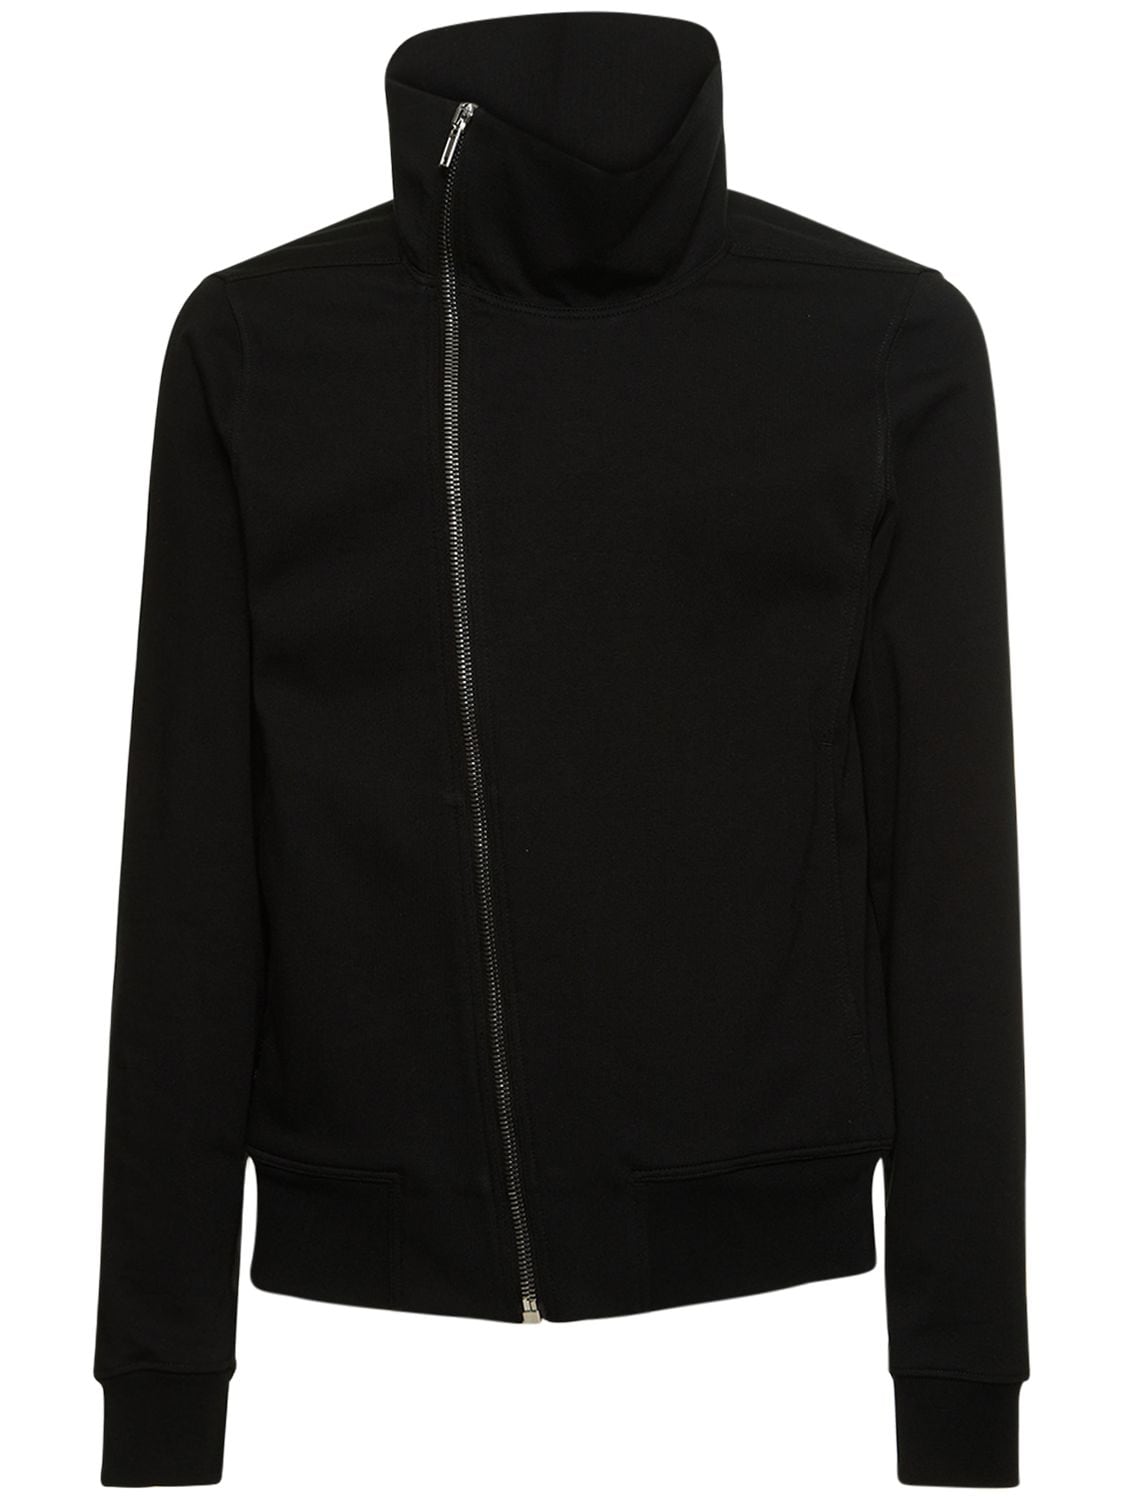 Shop Rick Owens Bauhaus Heavy Cotton Jersey Sweatshirt In Black